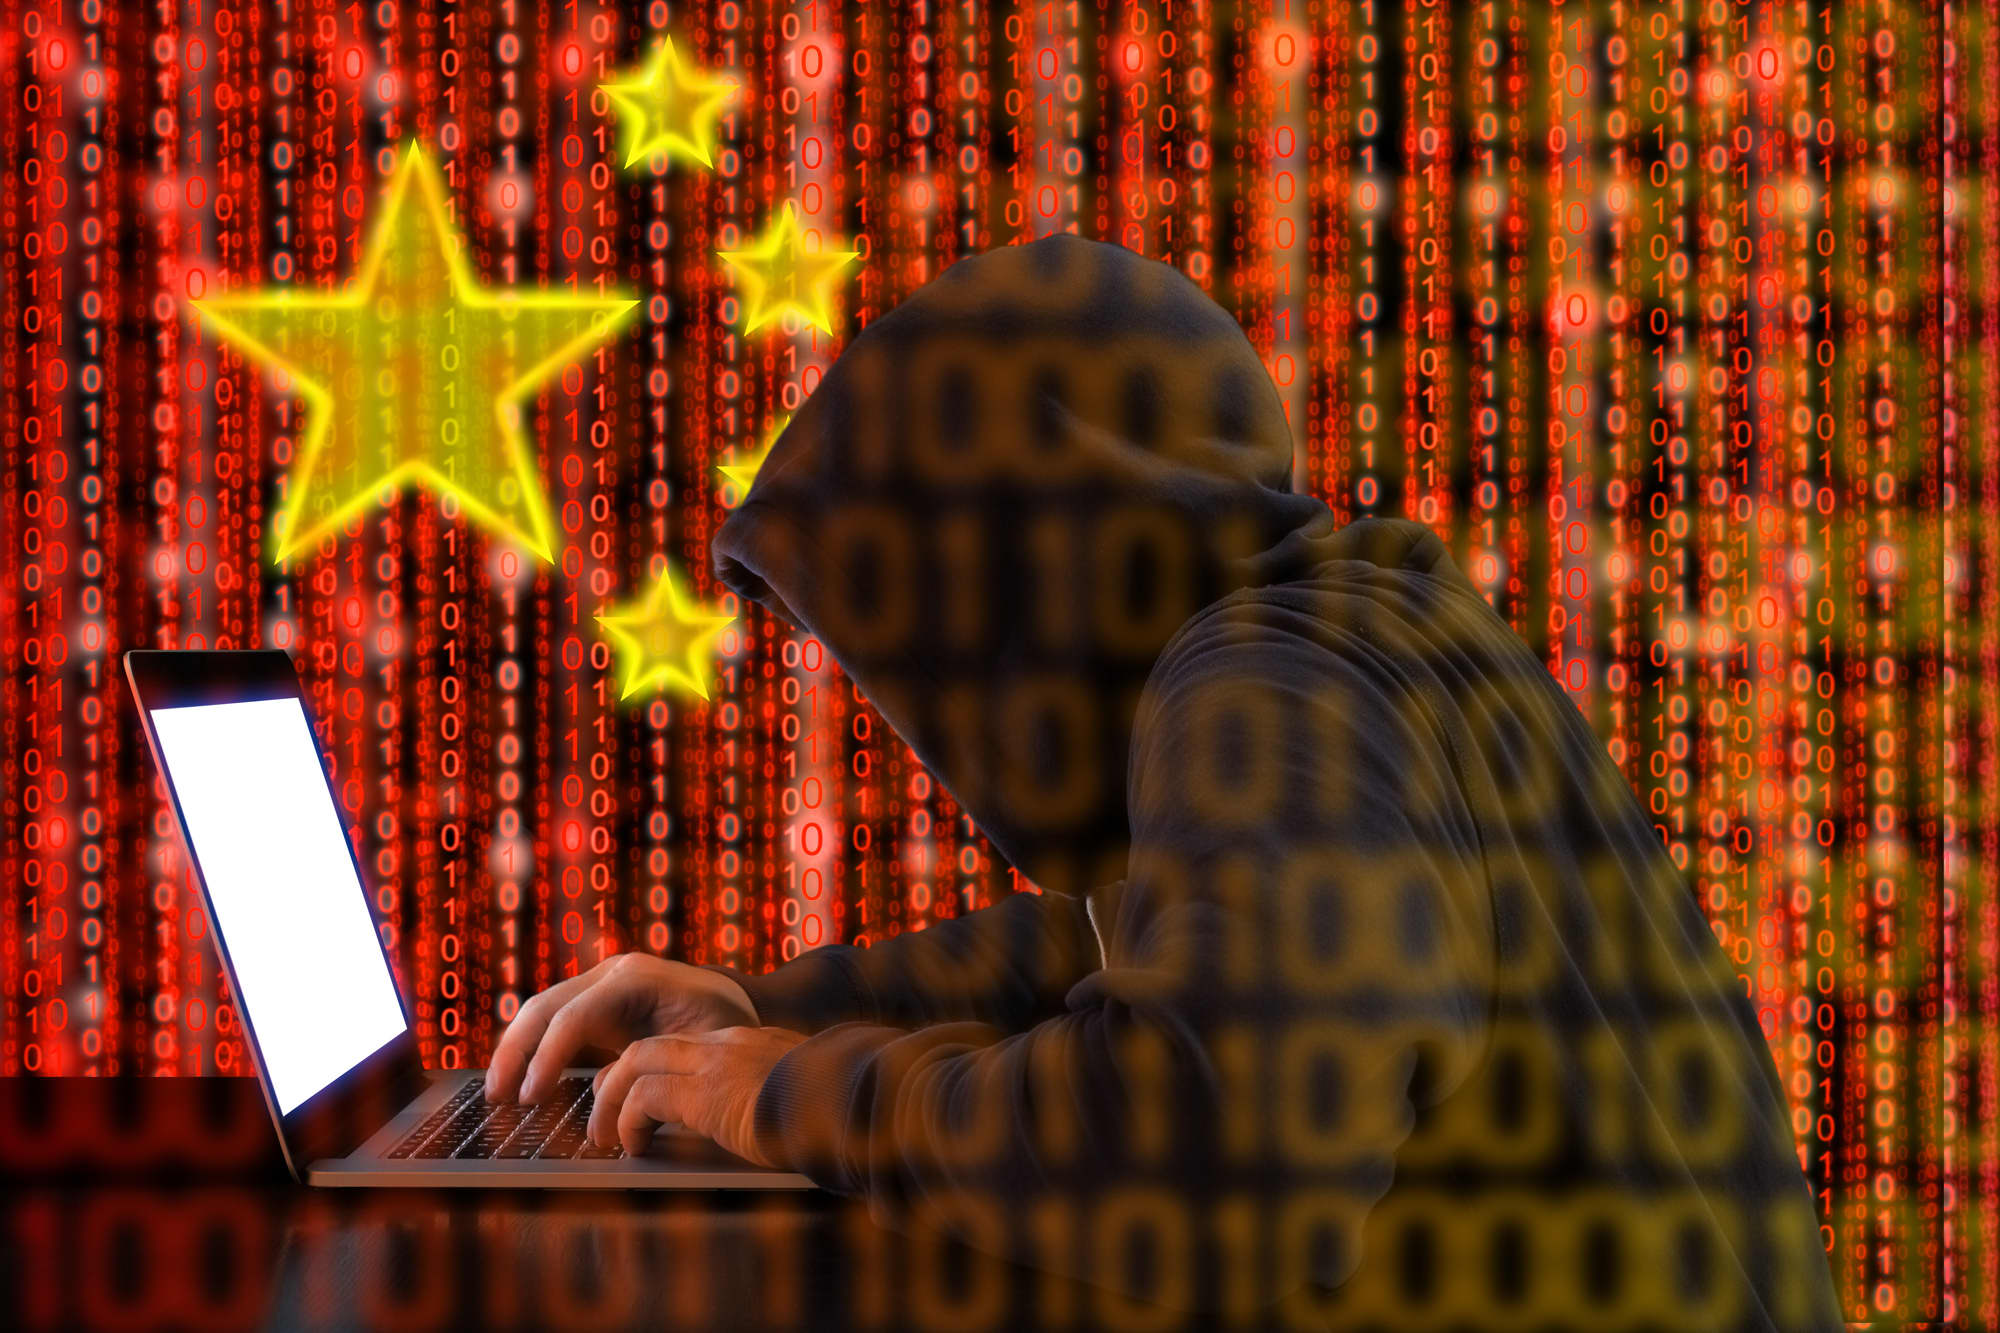 Raporti: Hakerat kinezë spiunuan qeveritë, organizatat dhe agjencitë e lajmeve